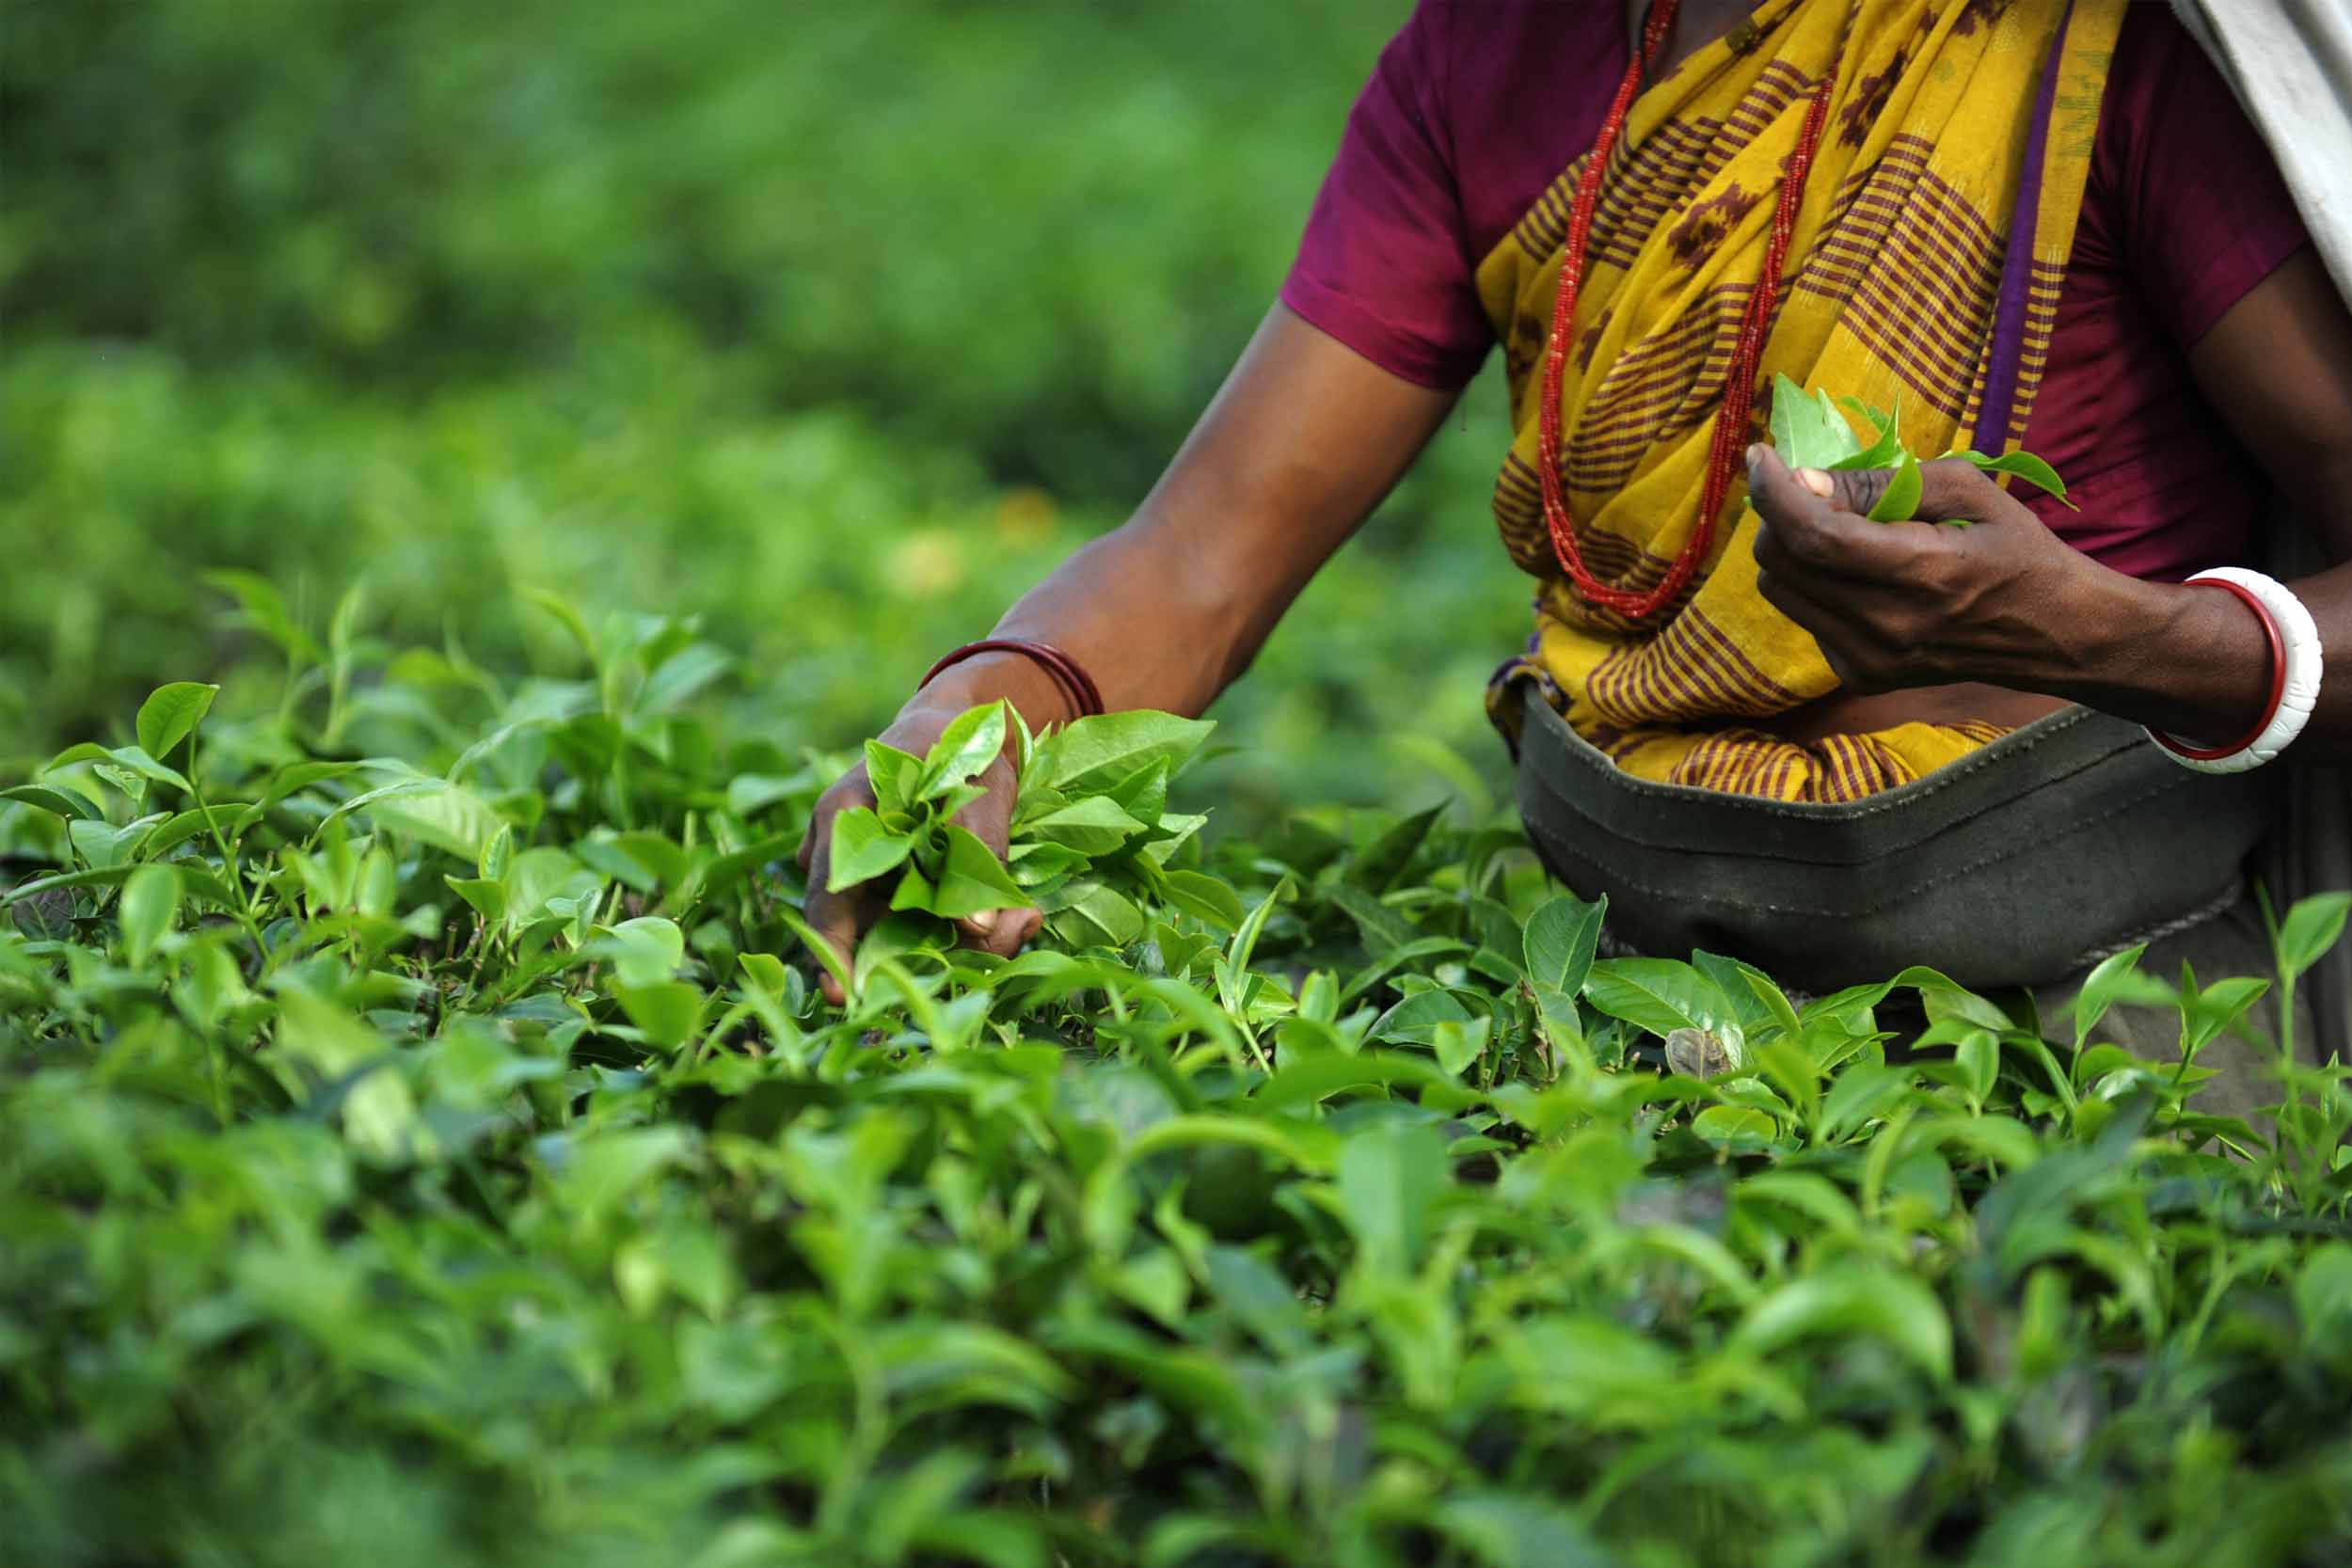 Tea harvesting